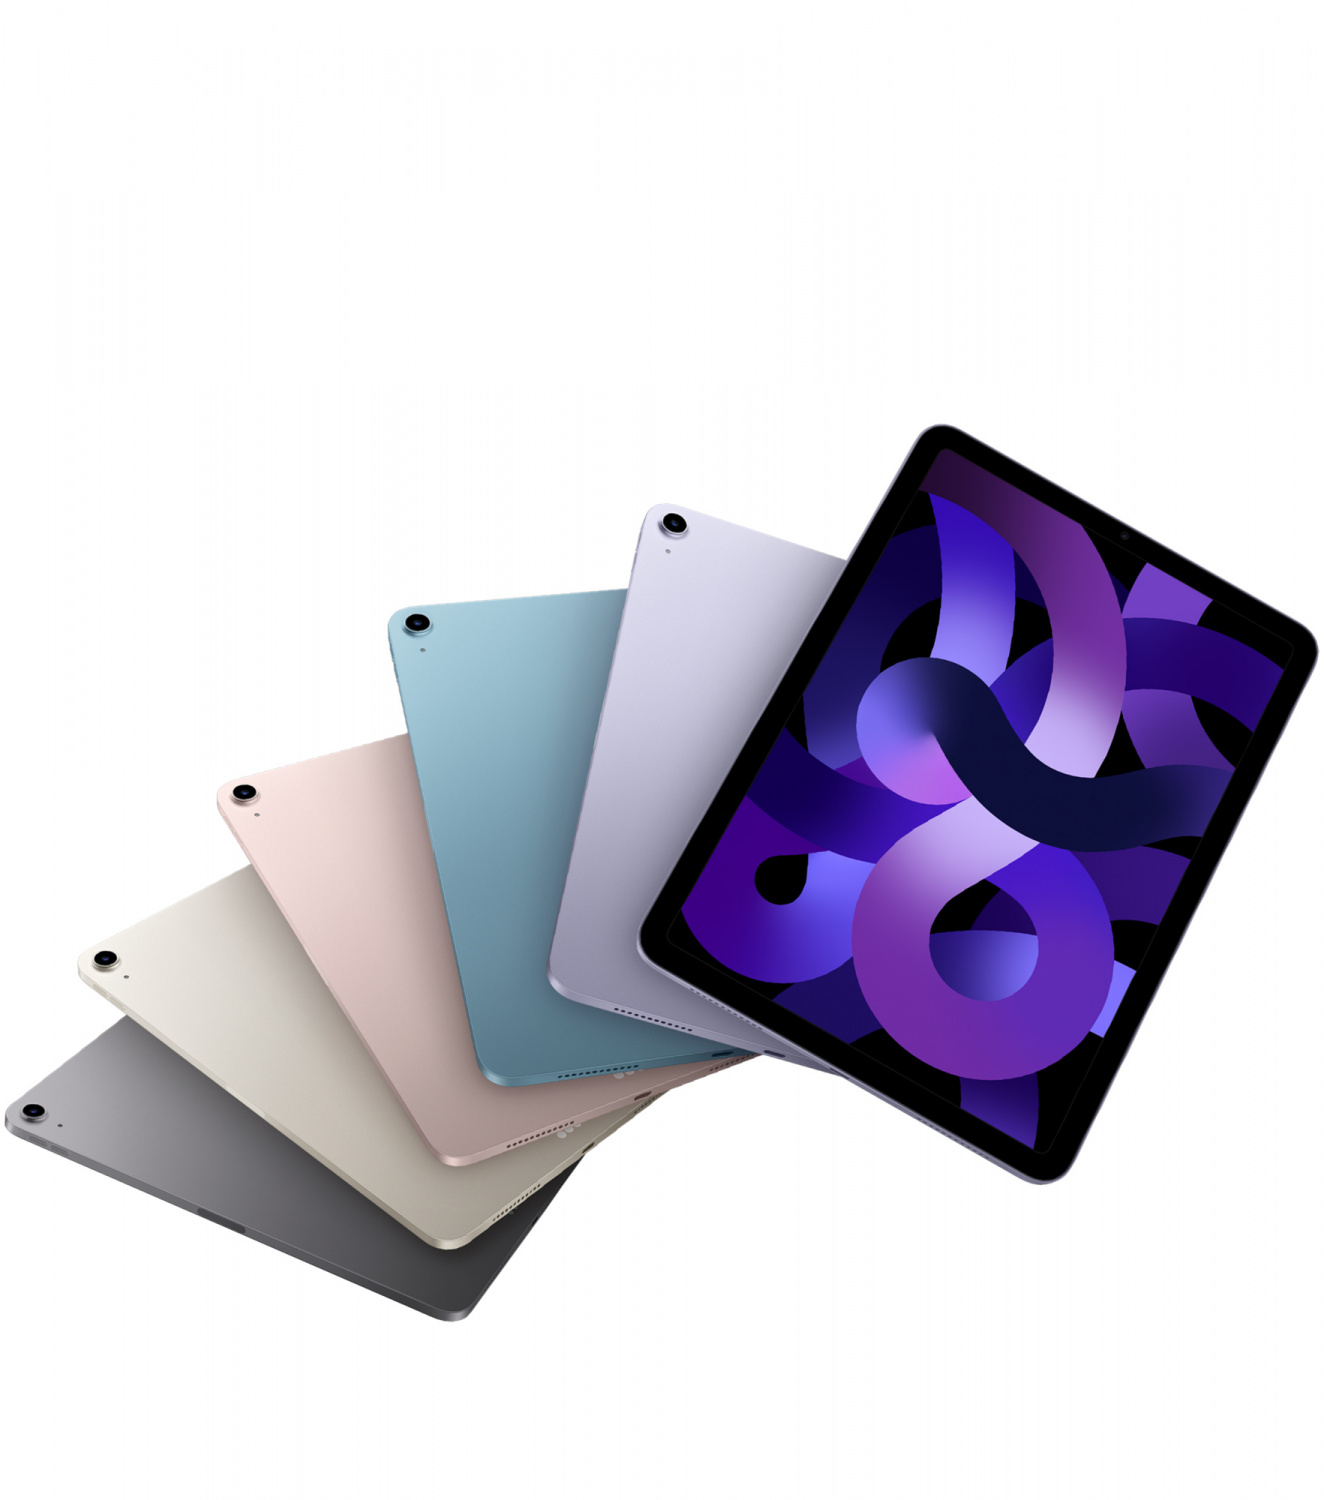 Купить планшет apple ipad air 5 поколение m1 2022  wi-fi 256 гб, space grey  Apple iPad Air в официальном магазине Apple, Samsung, Xiaomi. iPixel.ru Купить, заказ, кредит, рассрочка, отзывы,  характеристики, цена,  фотографии, в подарок.